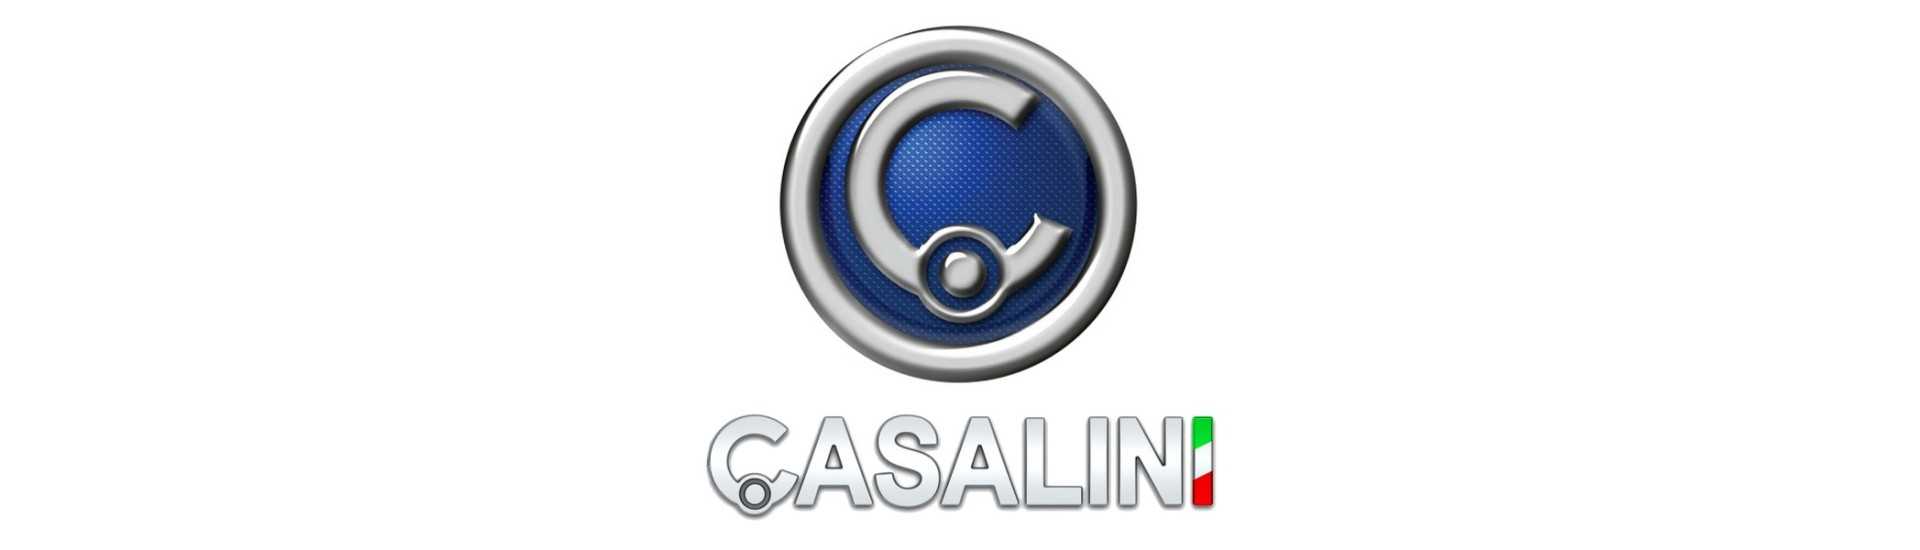 Bremsplatte zum besten Preis für Auto ohne Lizenz Casalini